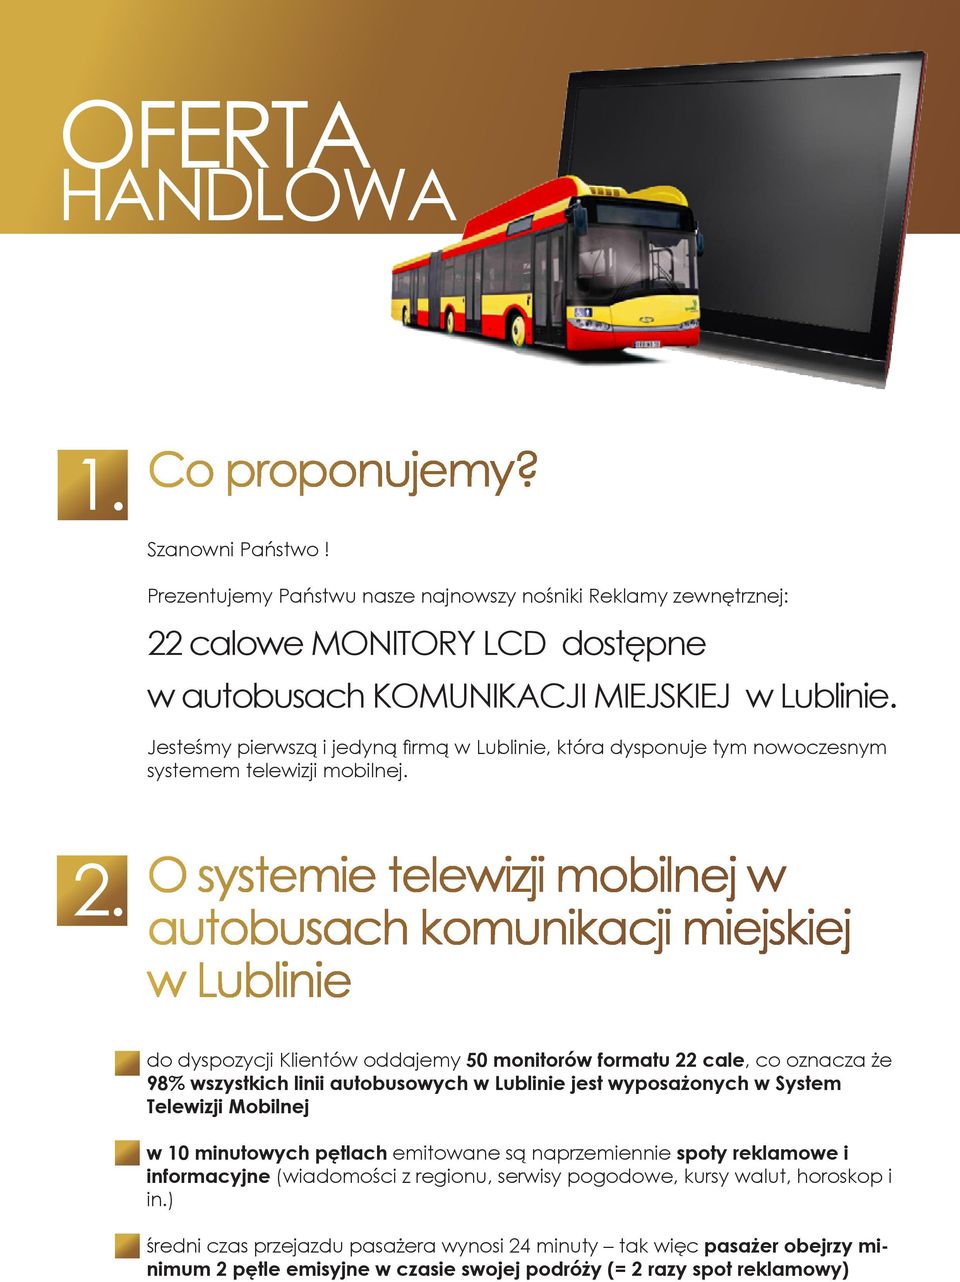 O systemie telewizji mobilnej w autobusach komunikacji miejskiej w Lublinie do dyspozycji Klientów oddajemy 50 monitorów formatu 22 cale, co oznacza że 98% wszystkich linii autobusowych w Lublinie